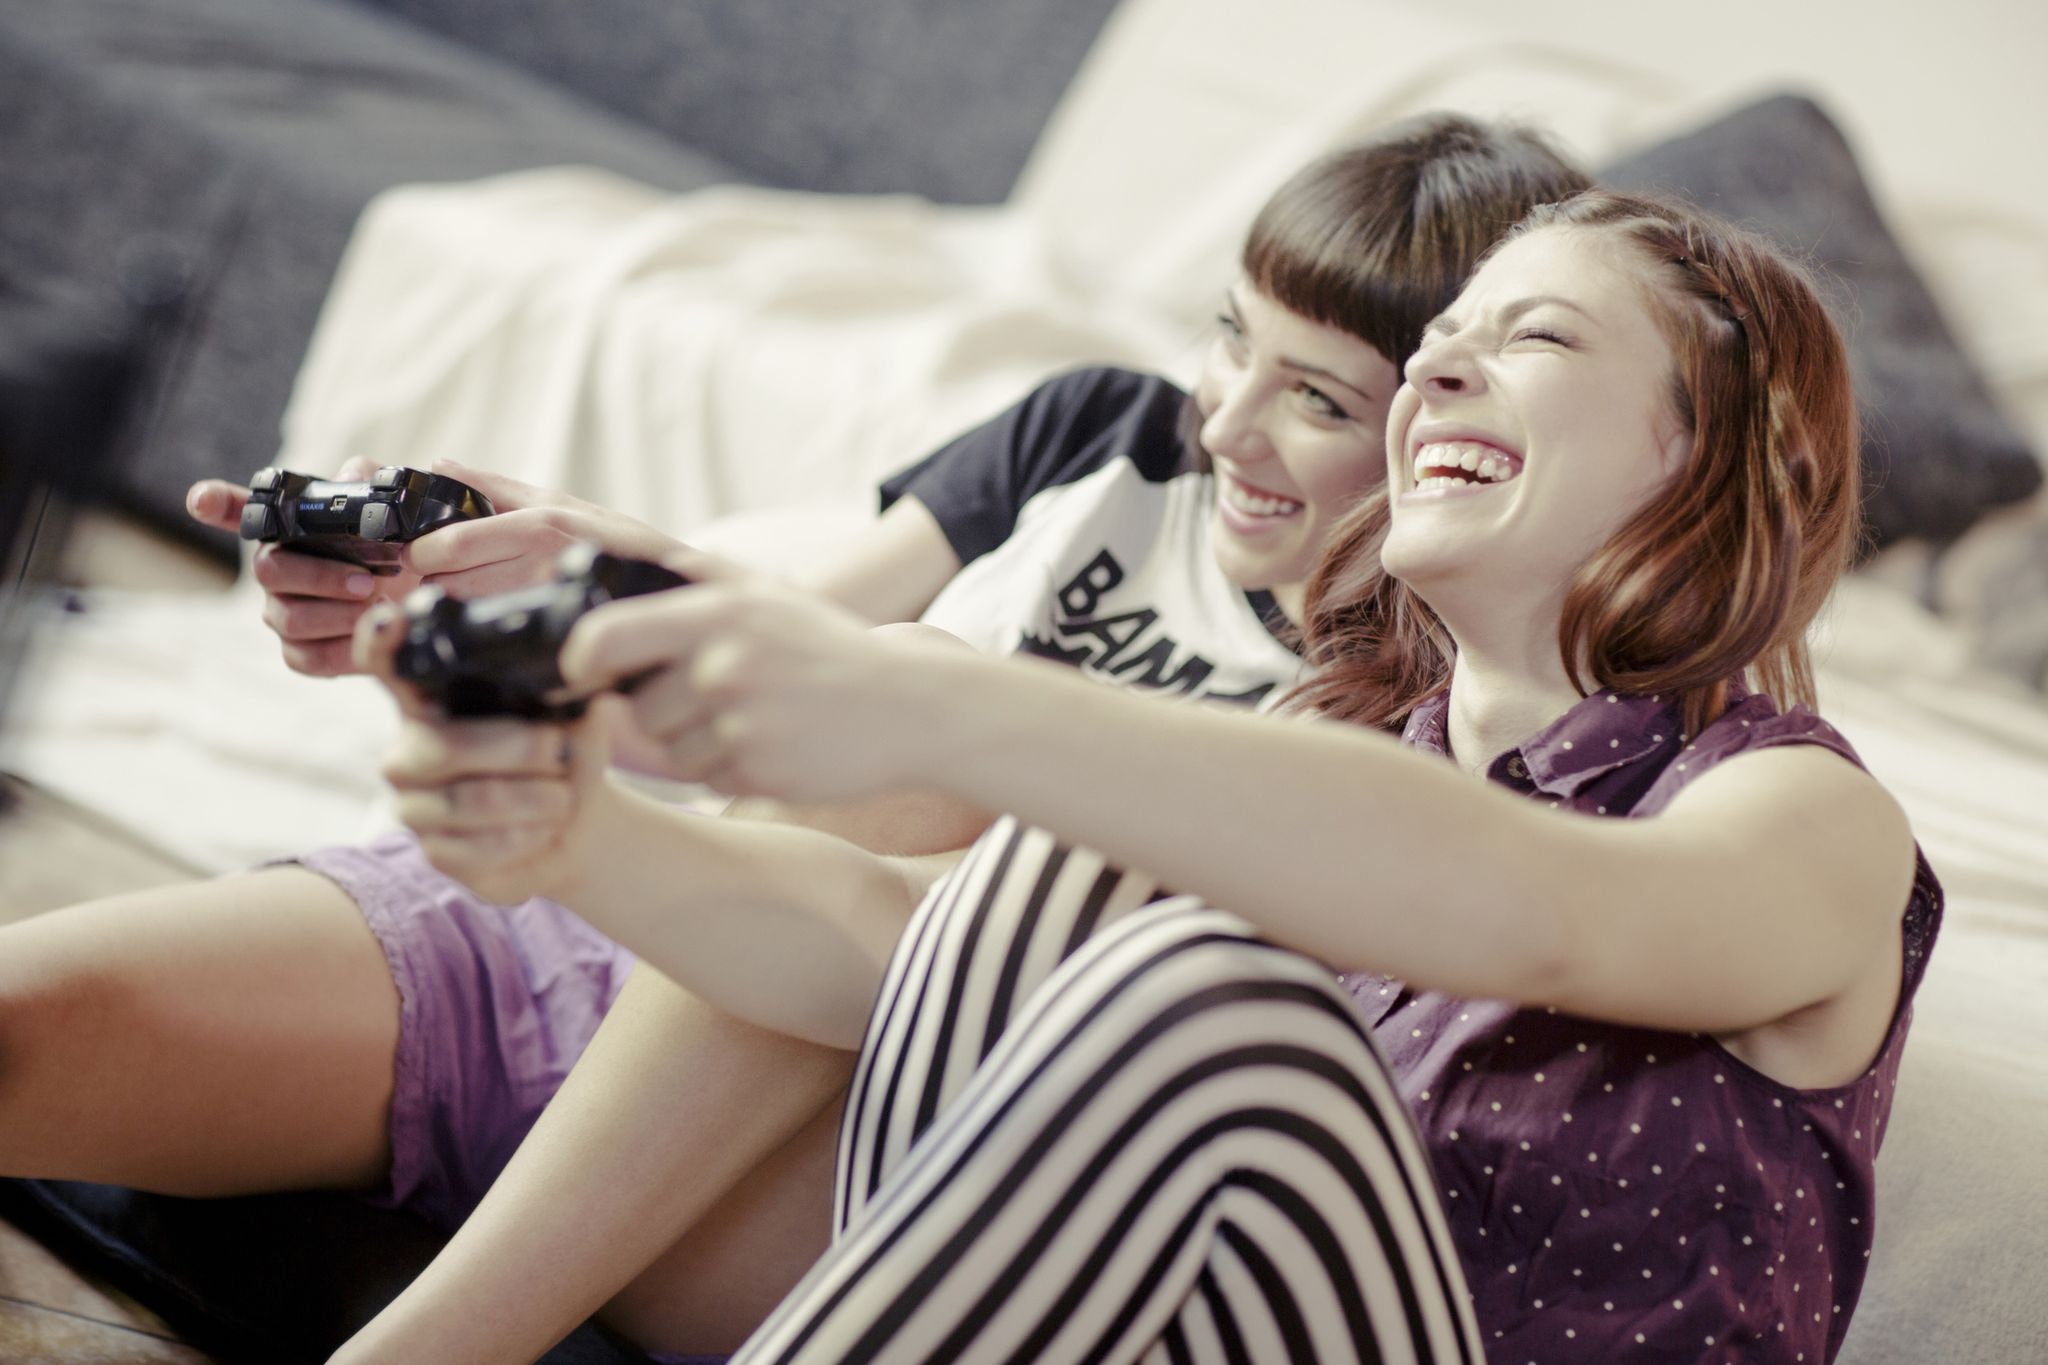 due ragazze che giocano con i videogame